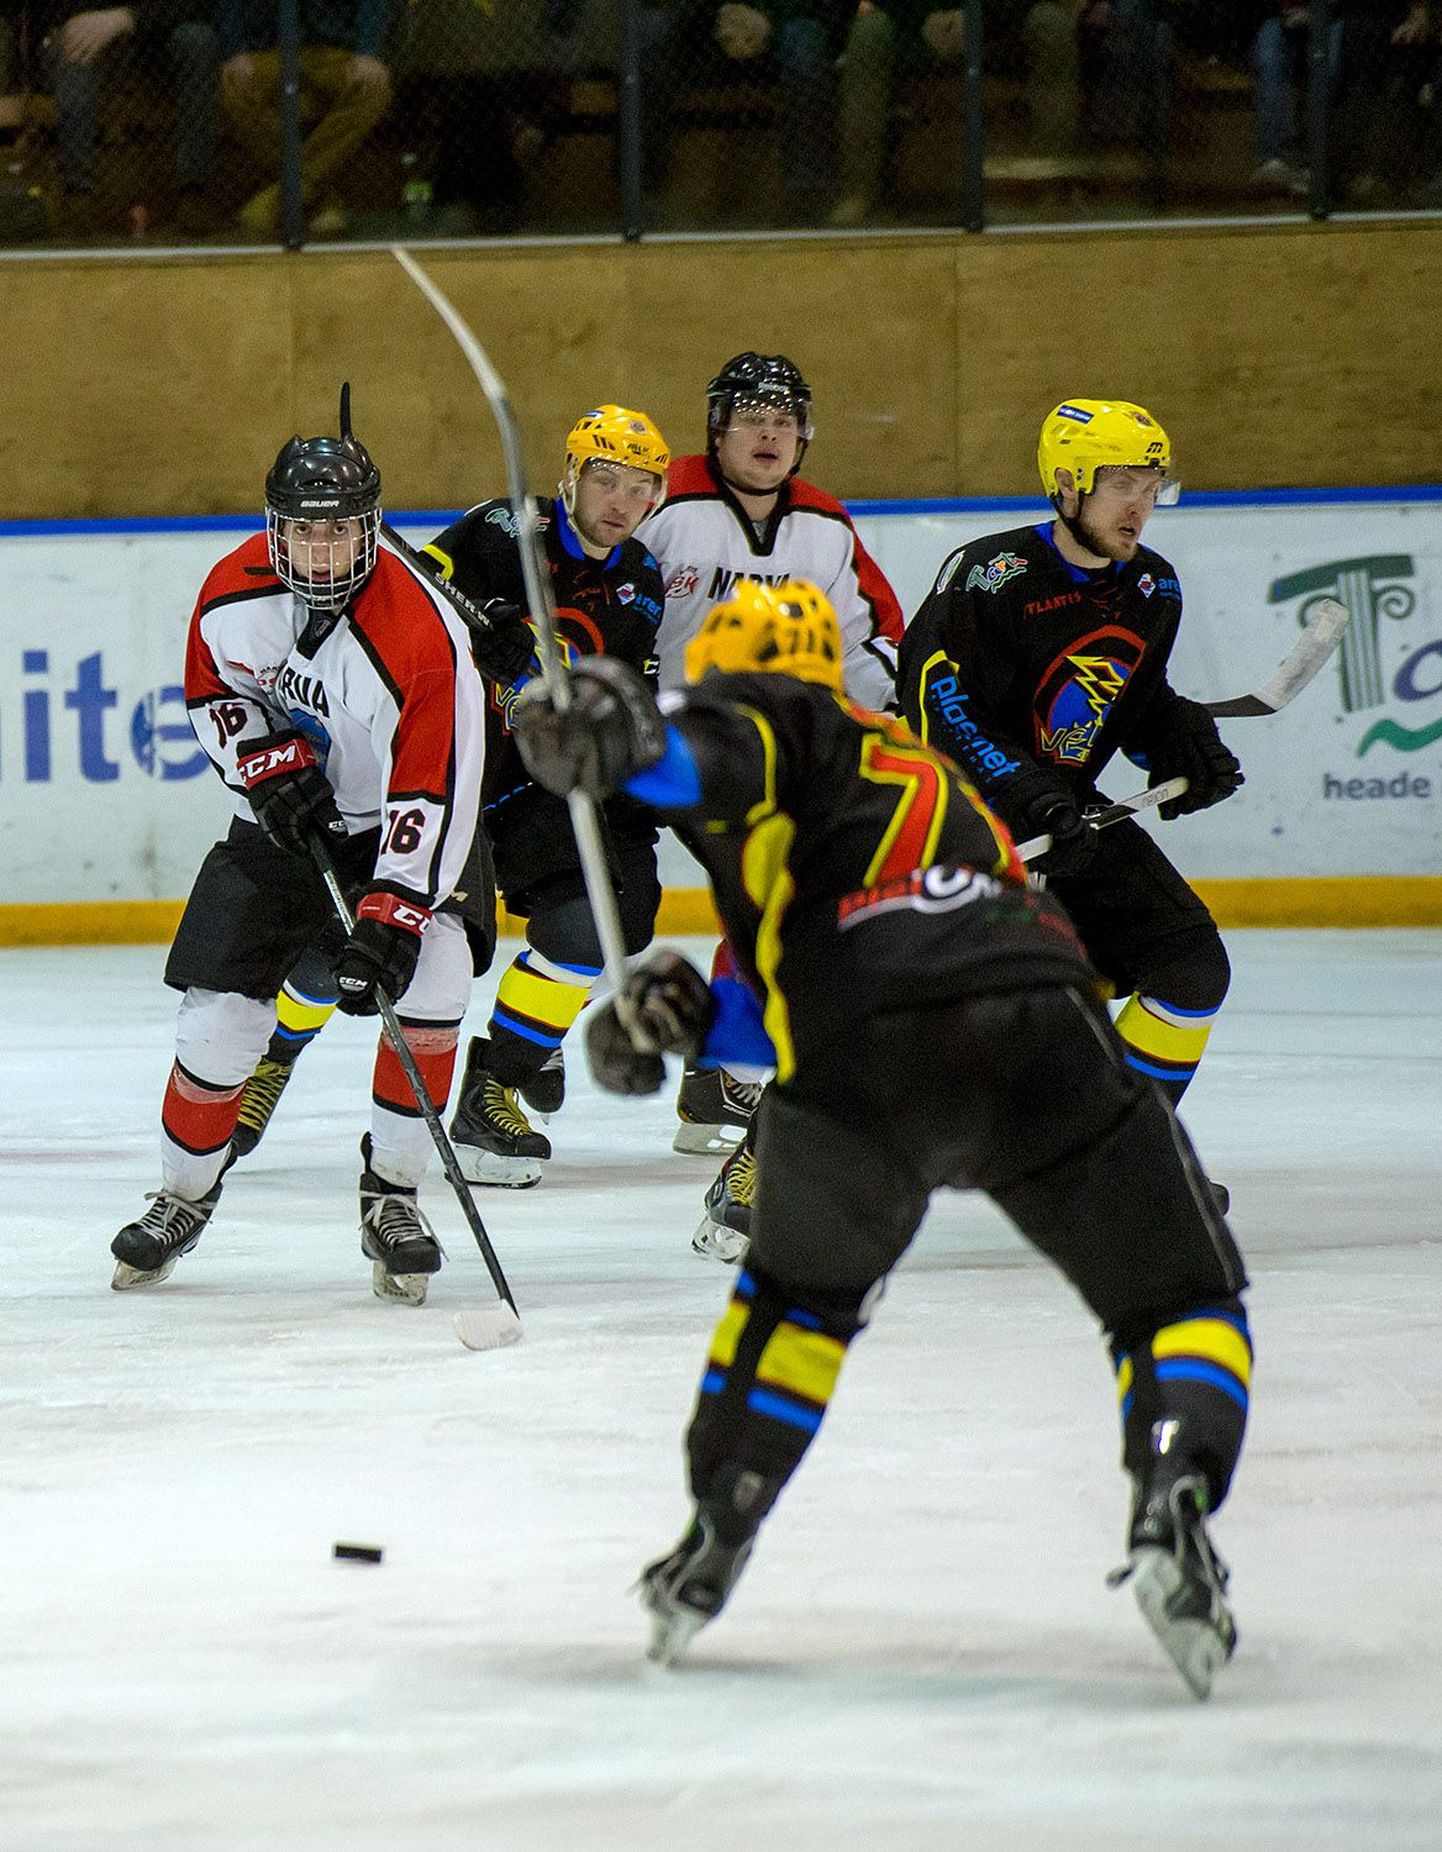 Lõunakeskuse jääl peetud esimeses finaalmängus alistas Tartu Kalev-Välk Narva klubi 12:5.